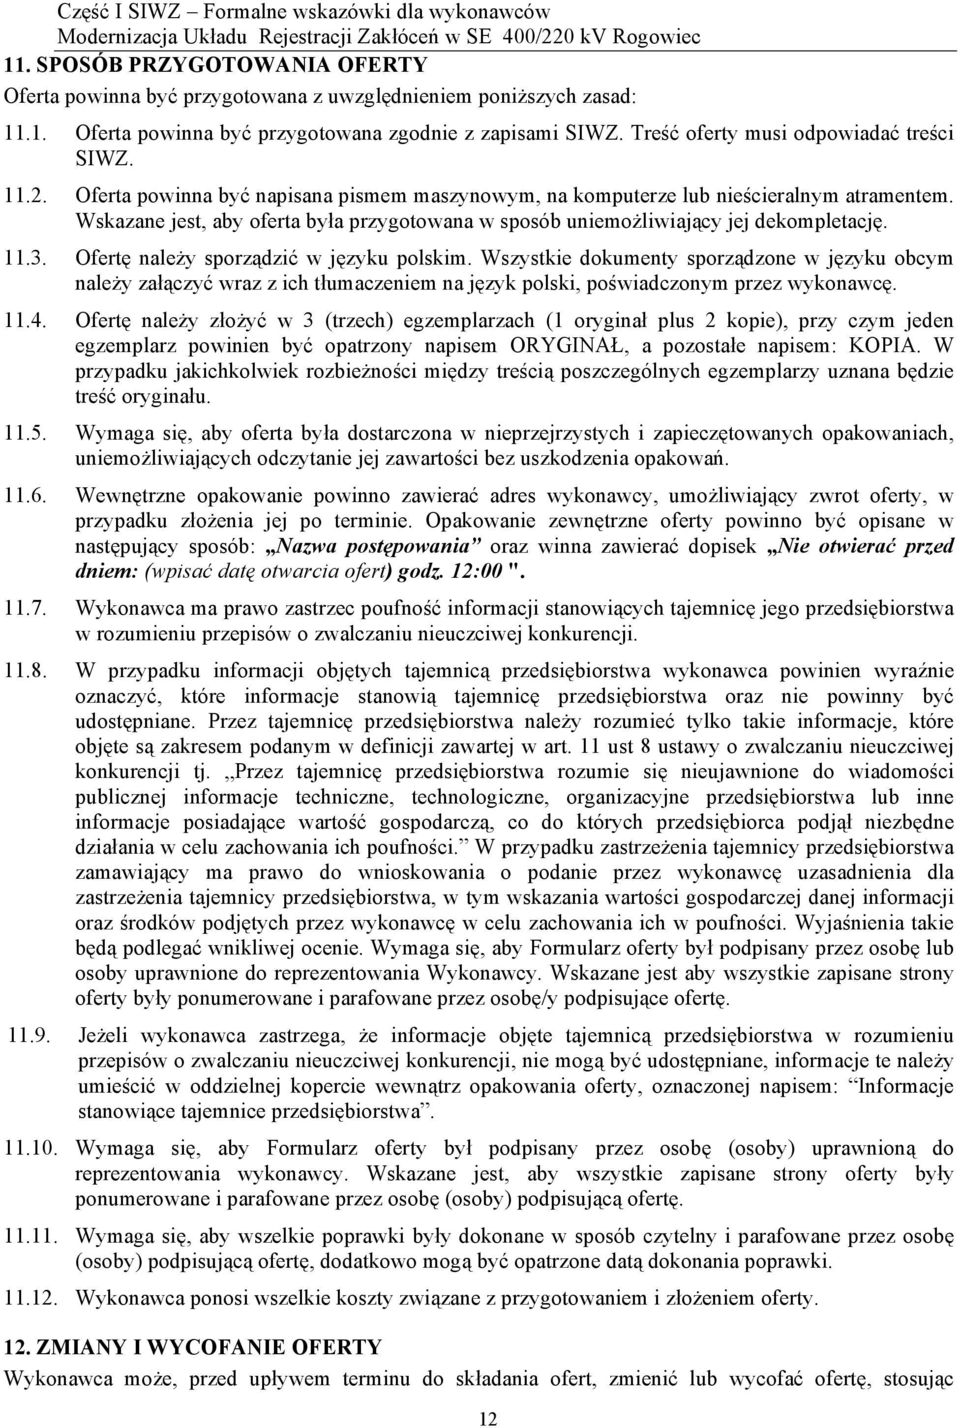 Wskazane jest, aby oferta była przygotowana w sposób uniemożliwiający jej dekompletację. 11.3. Ofertę należy sporządzić w języku polskim.